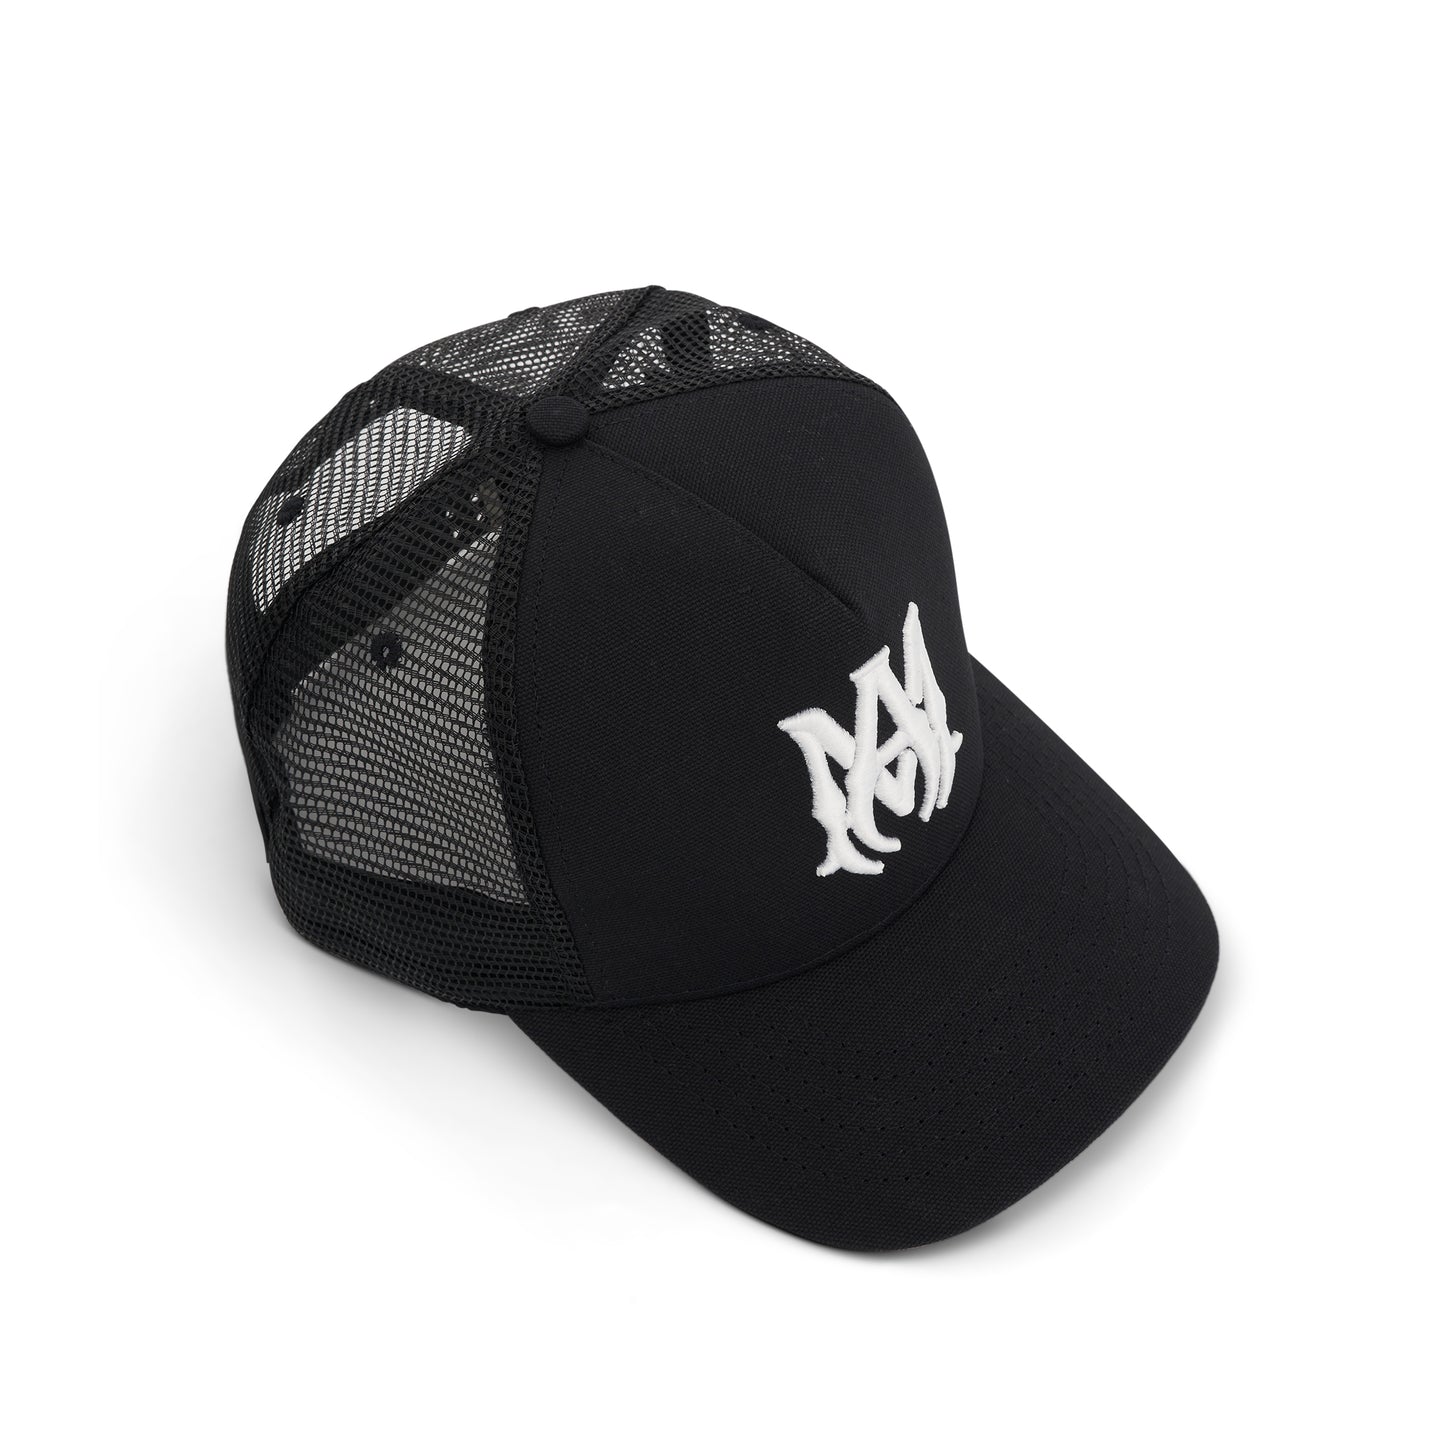 MA Logo Trucker Hat in Black/White